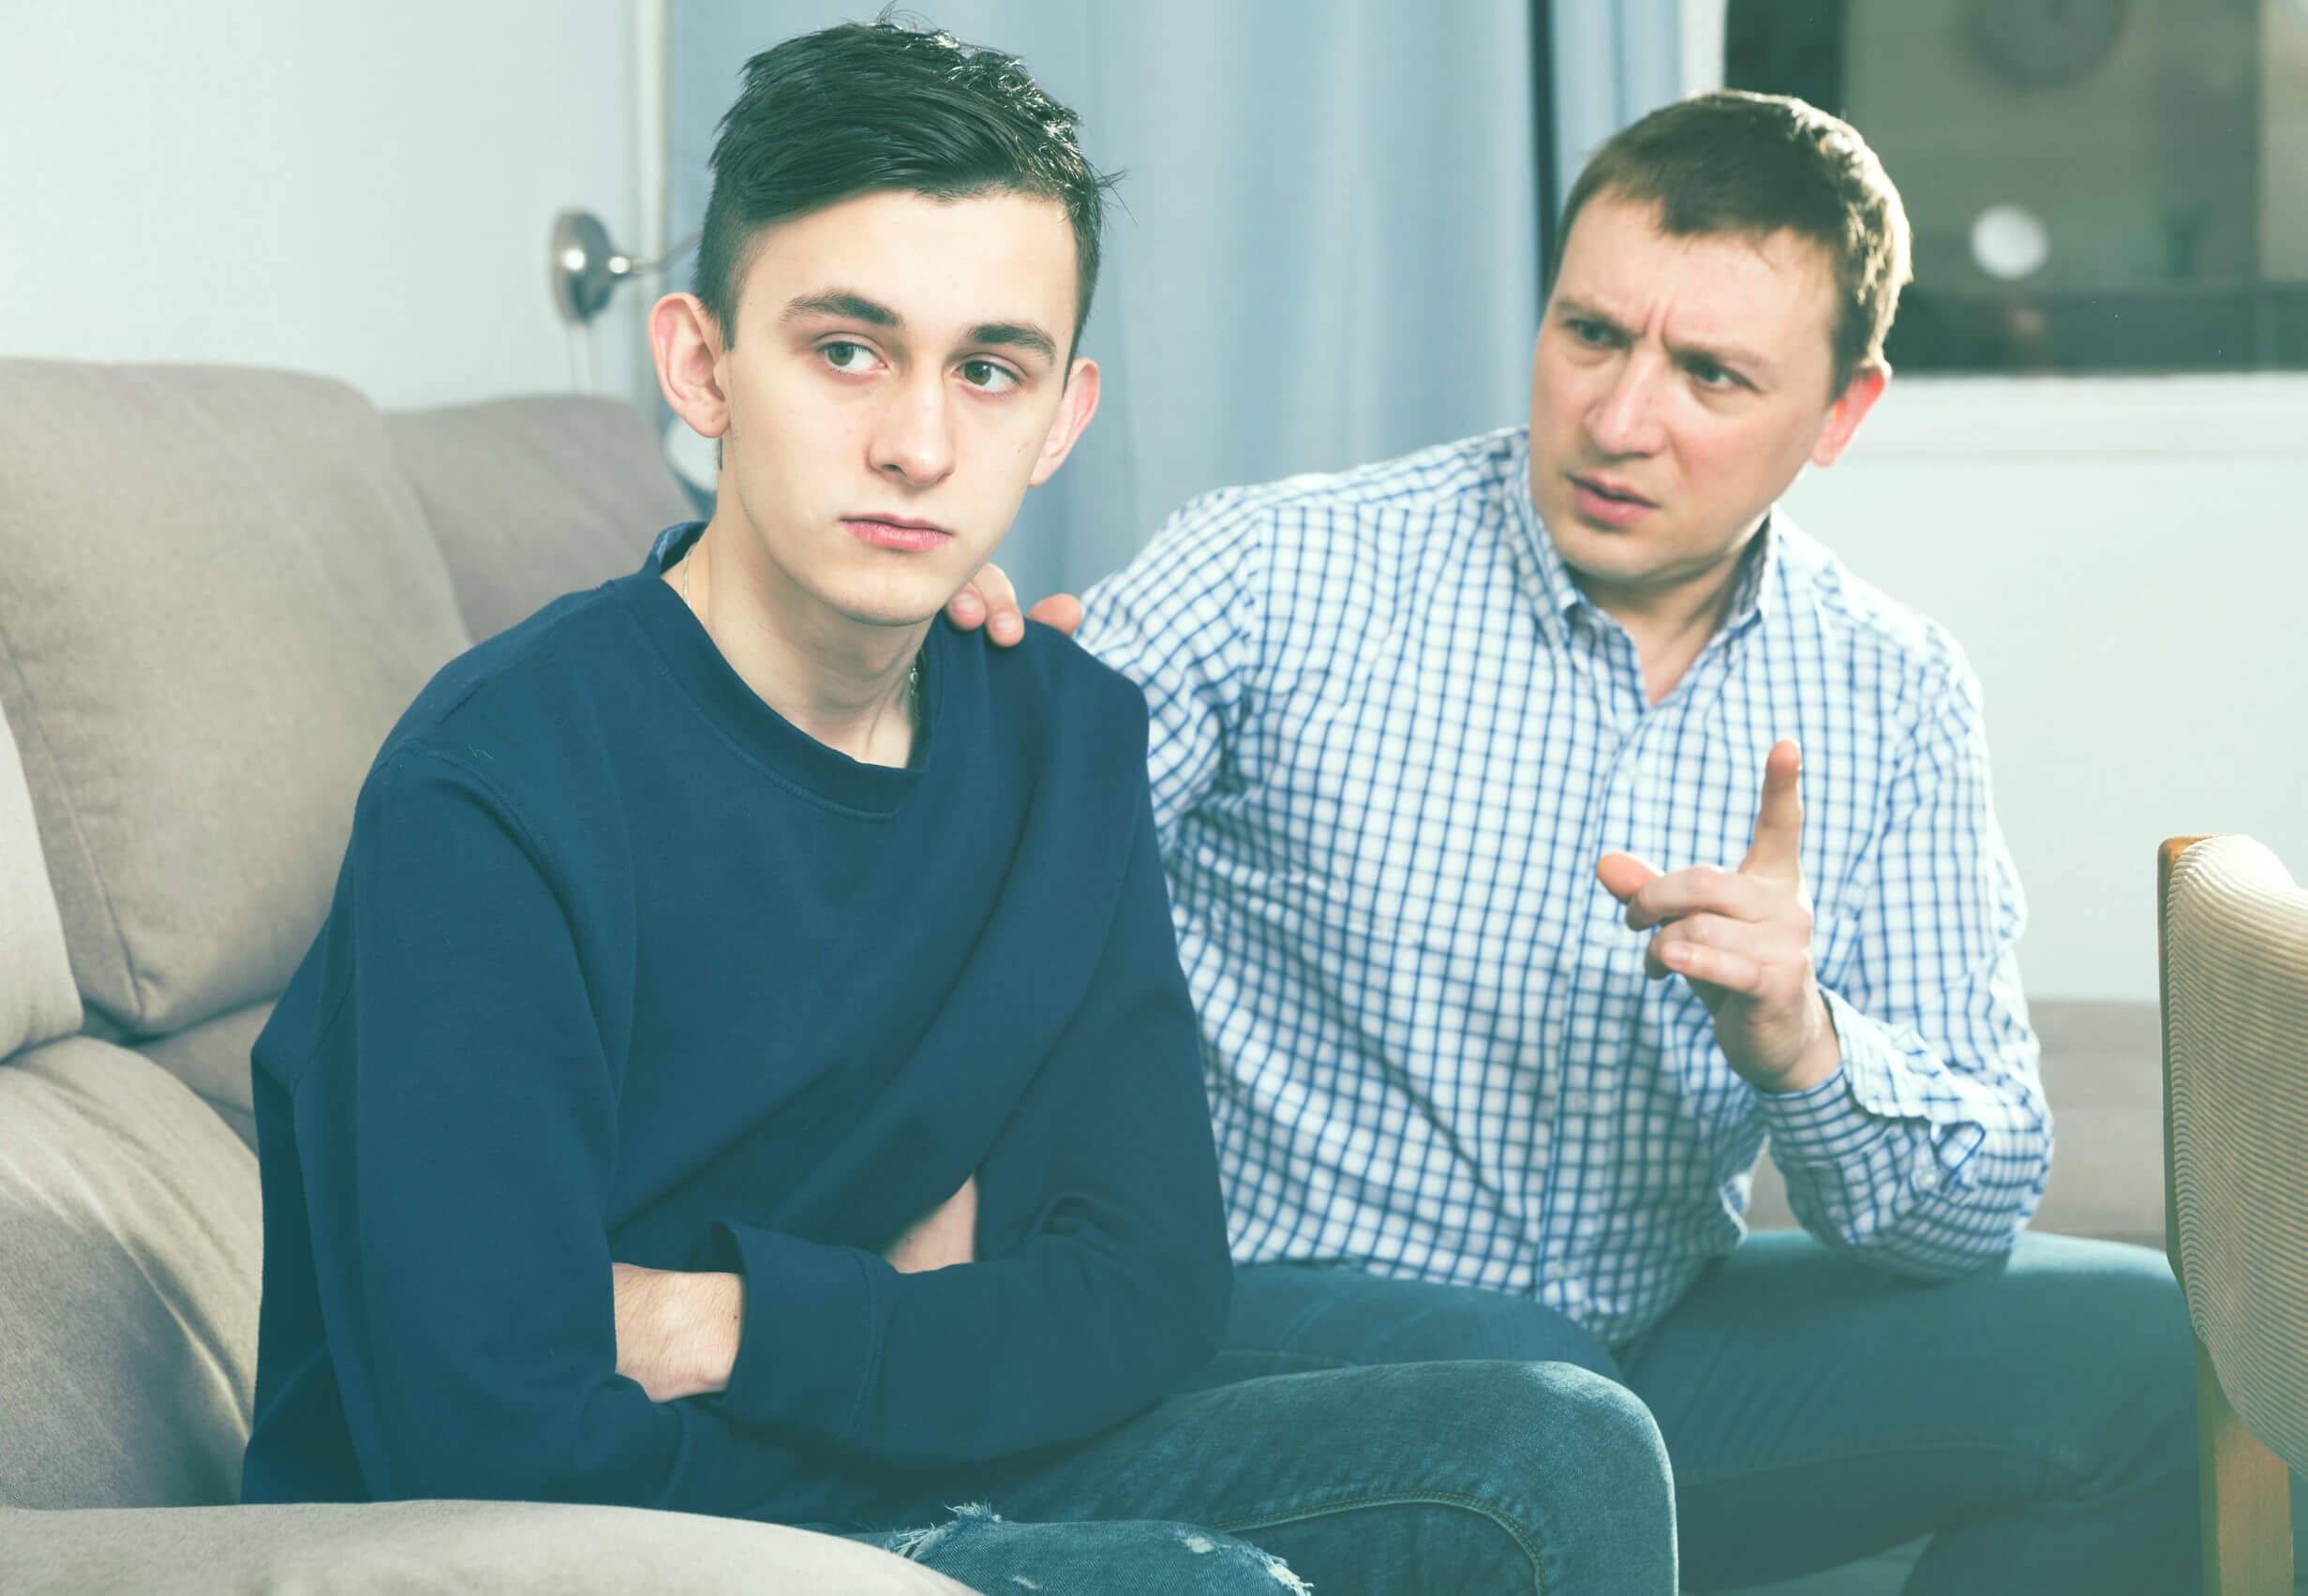 Père parle à son fils adolescent des limites parce qu'il y a encore un enfant en lui.